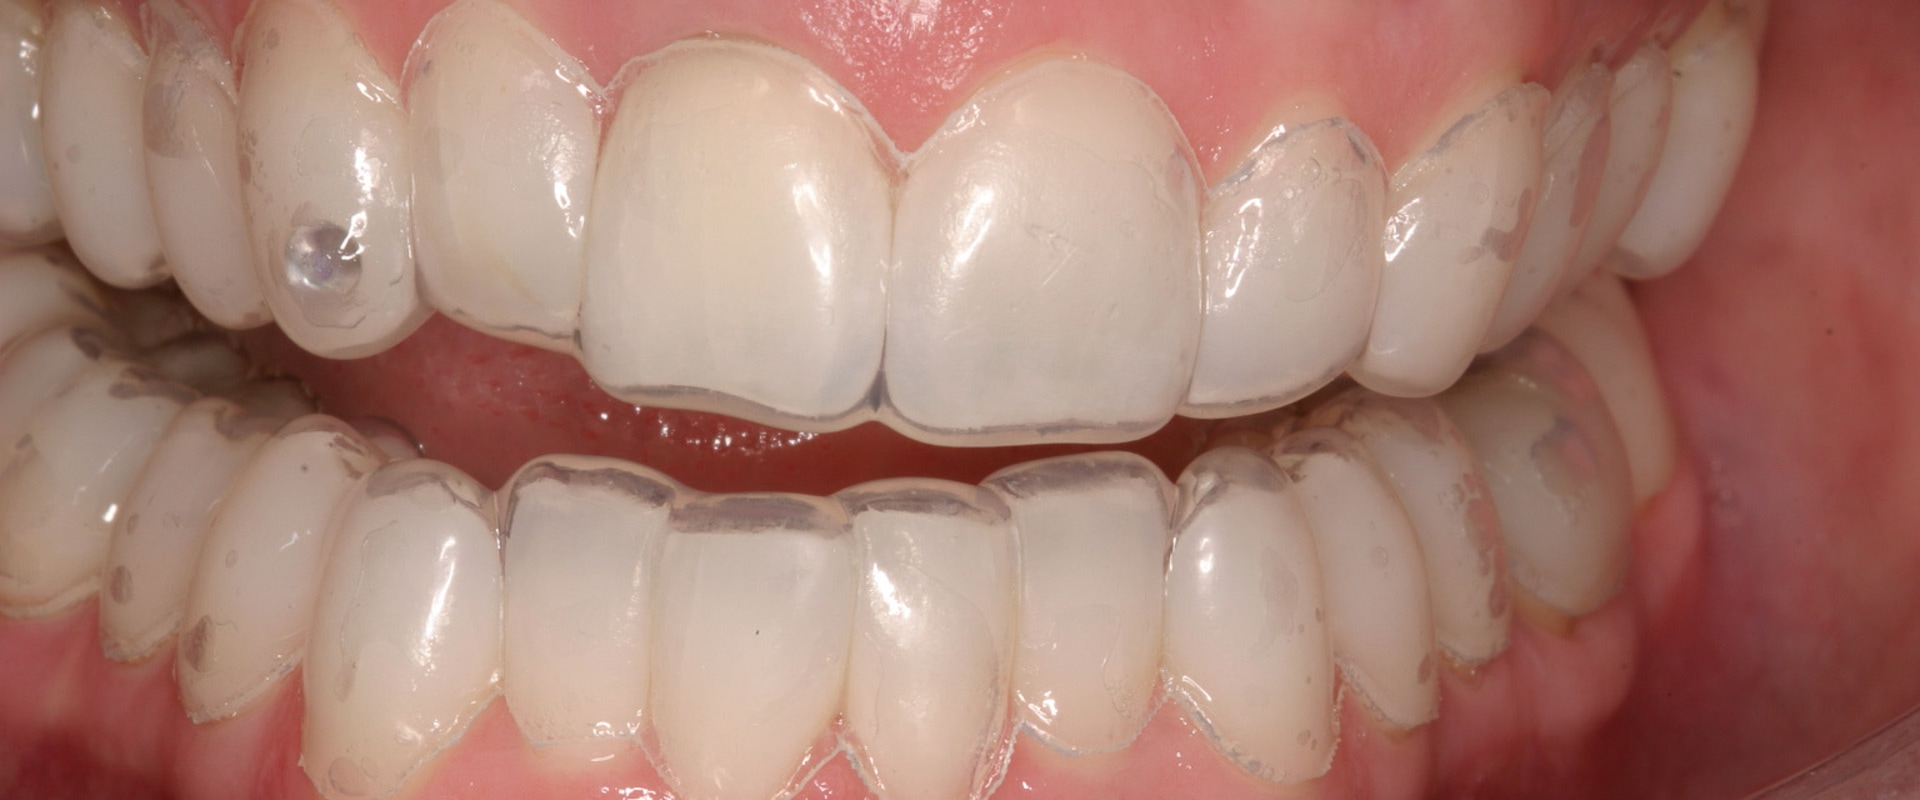 Can a Dentist Whiten Teeth?